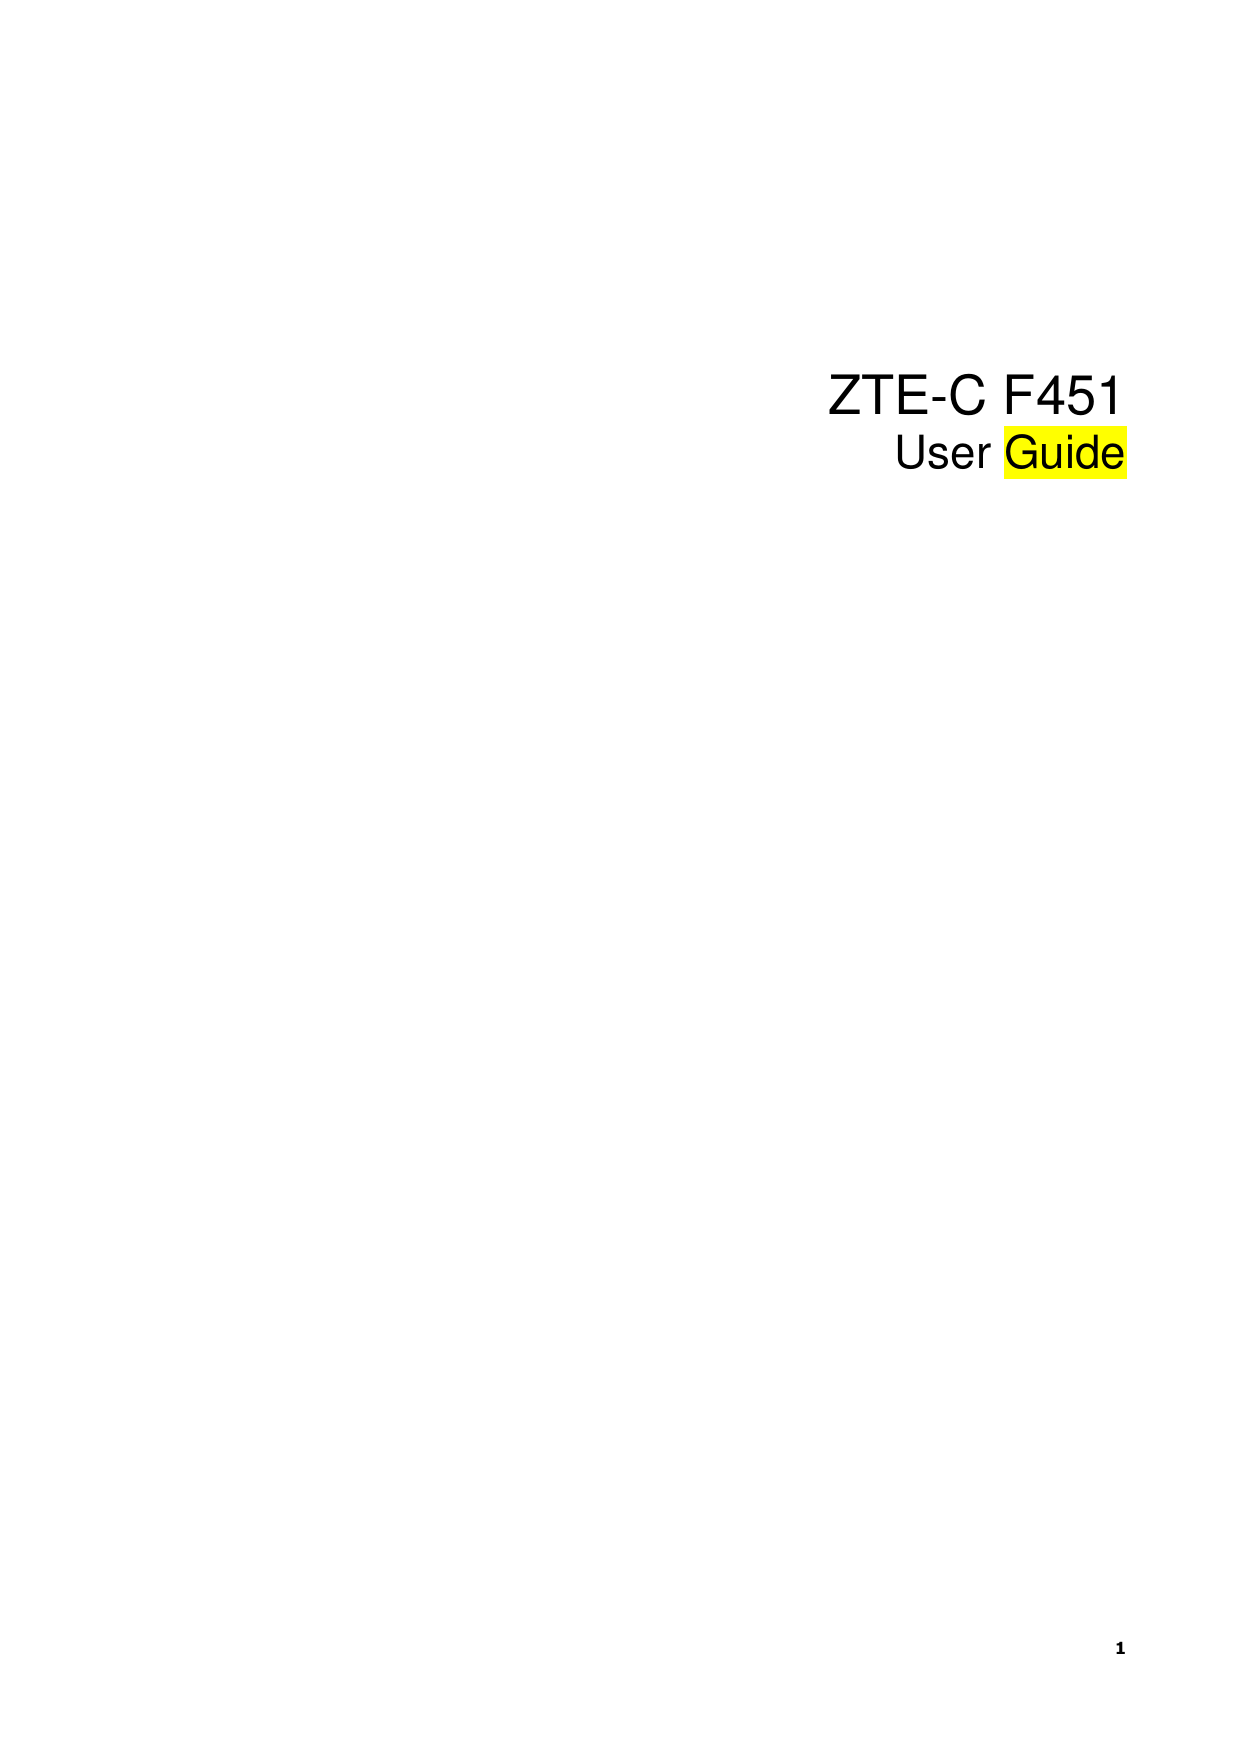   1       ZTE-C F451 User Guide                              